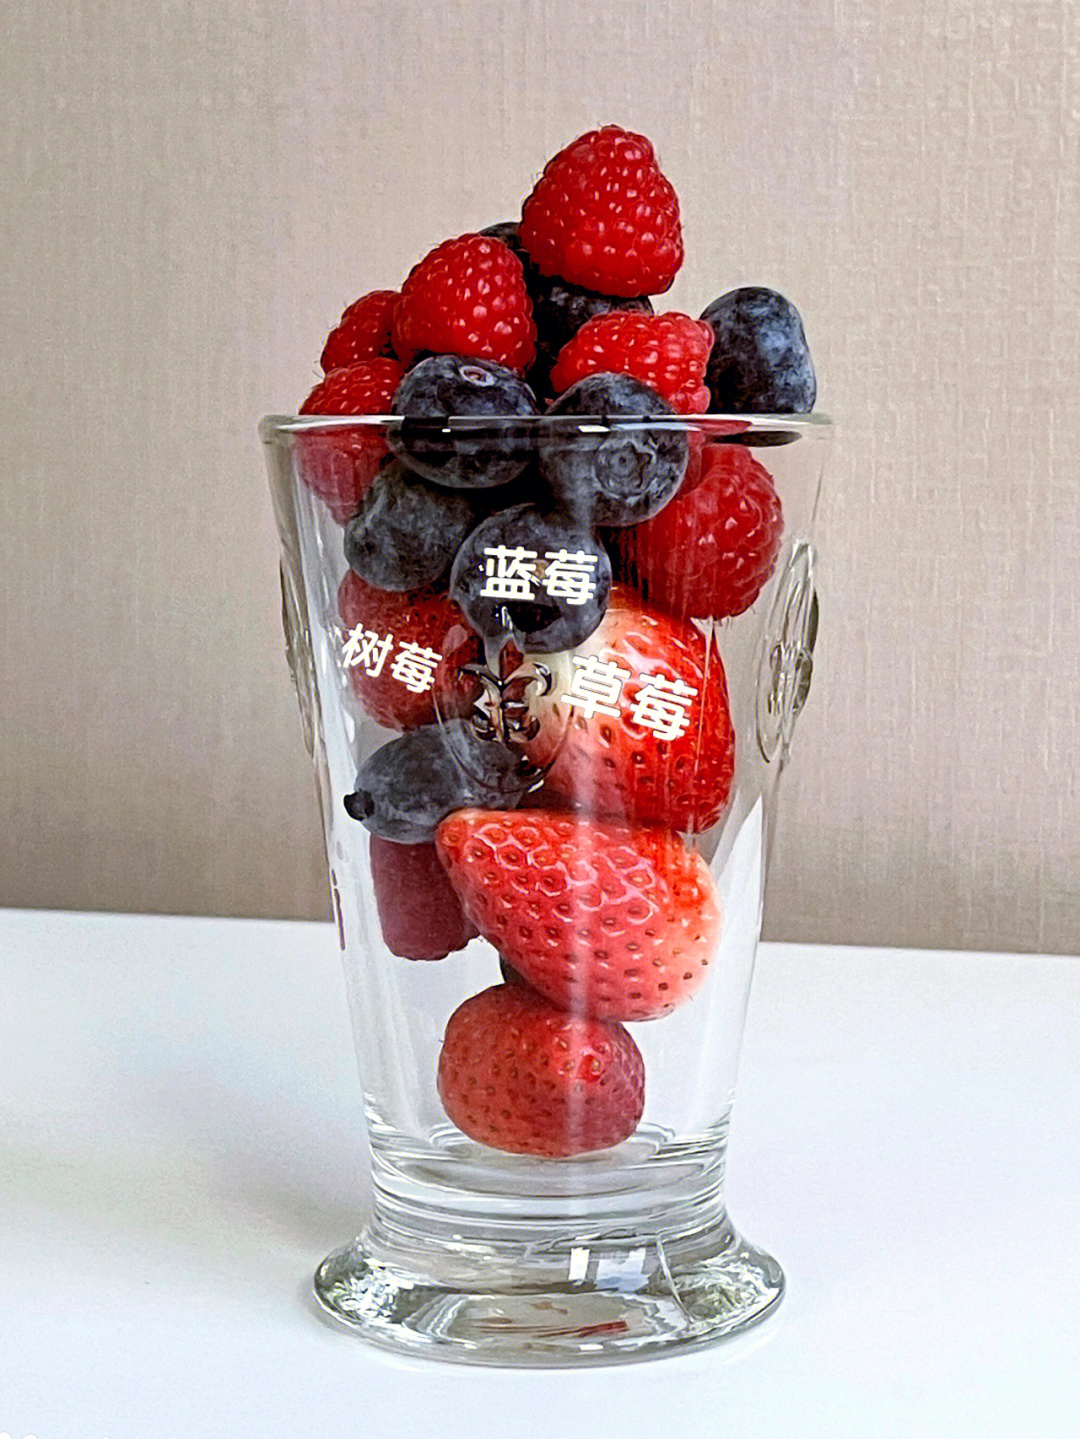 果汁模式,(有喜欢的可以加酸奶)酸酸甜甜抗衰饮品蓝莓和树莓吃了能